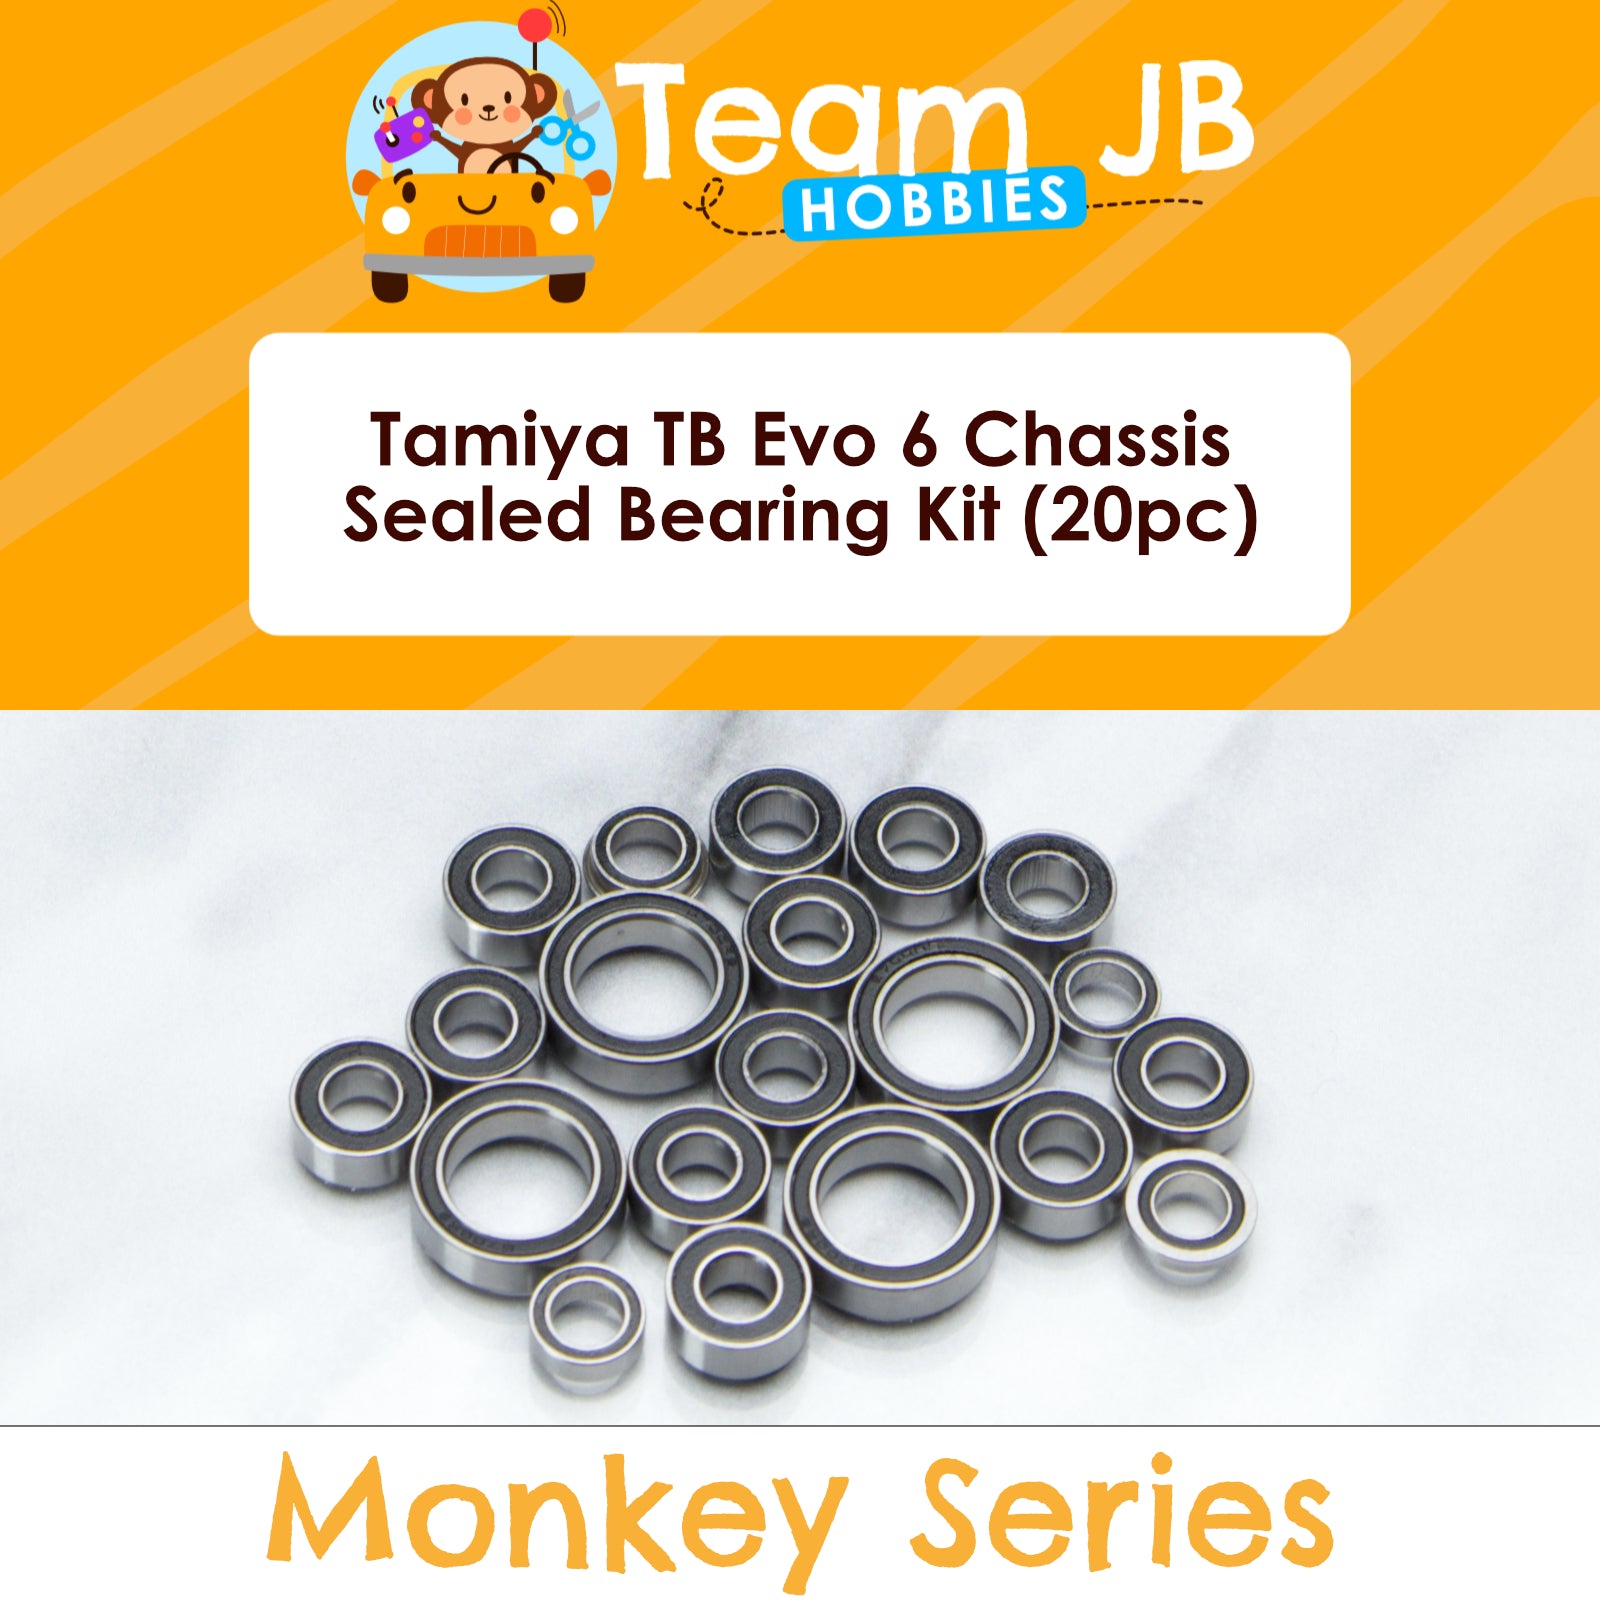 Tamiya TB Evo 6 Chassis - Sealed Bearing Kit